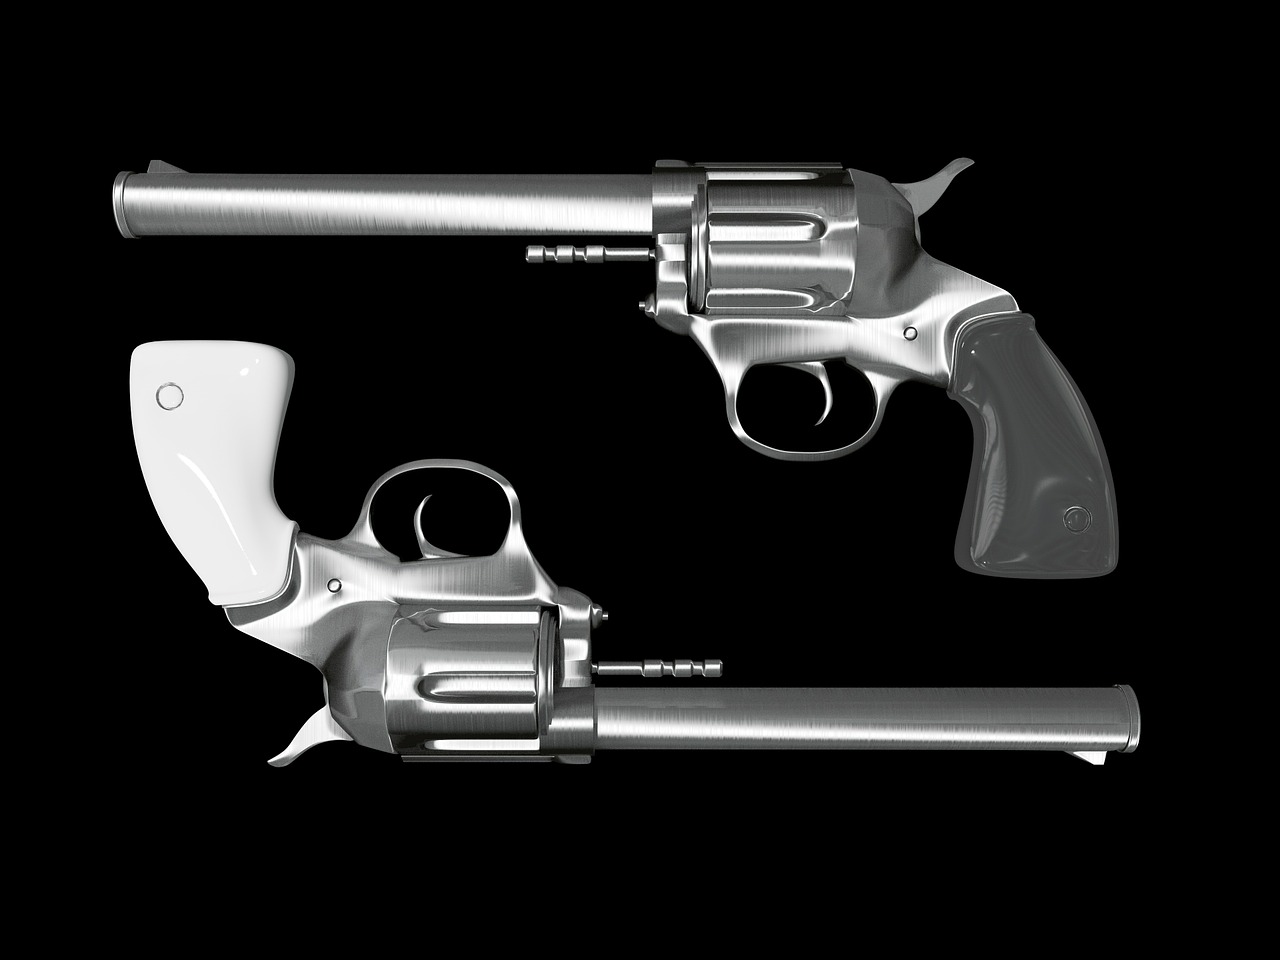 Two silver colored revolver